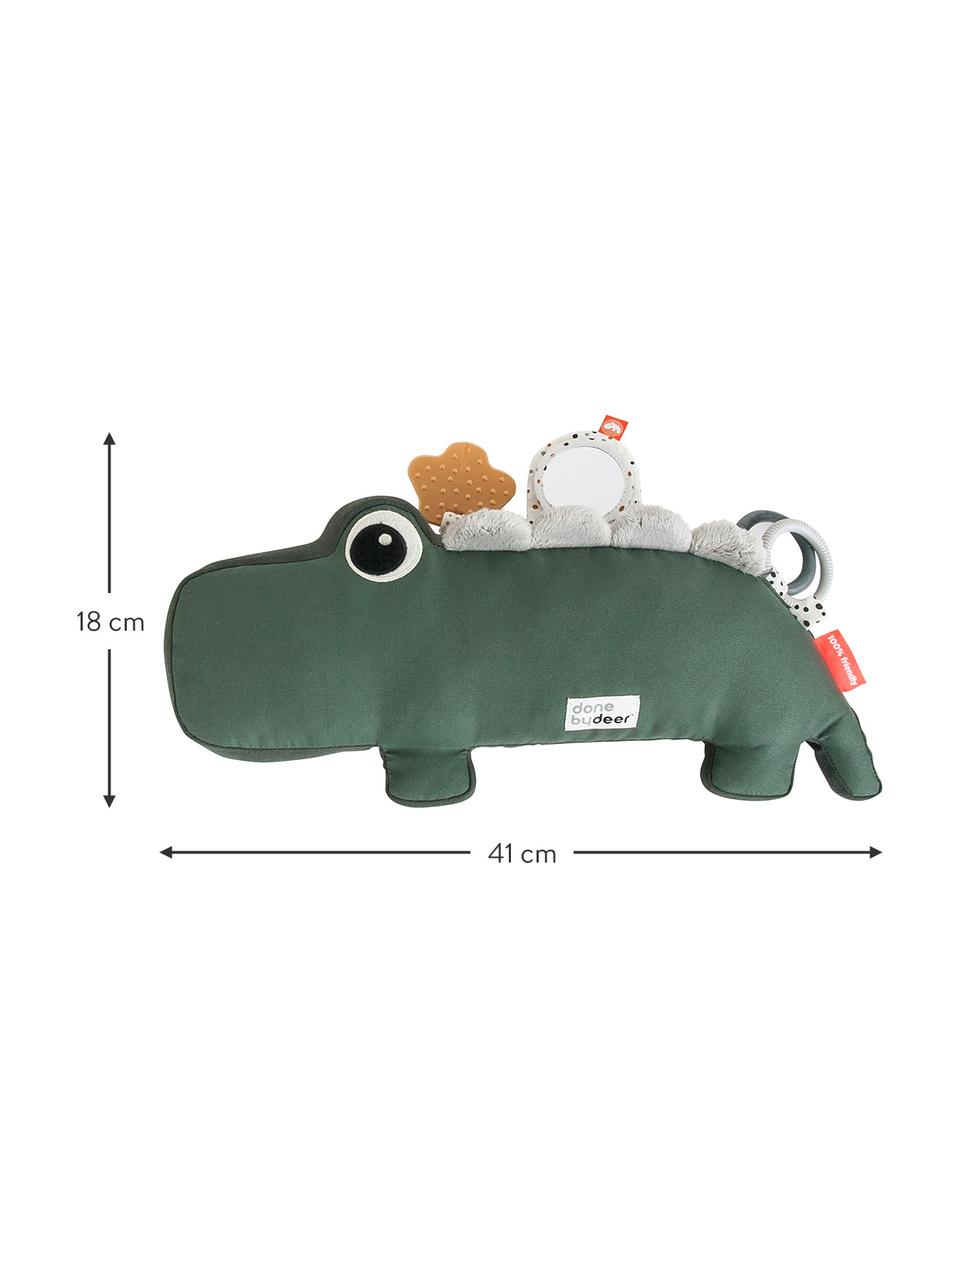 Speelgoed Tummy Time Croco, Bekleding: 50% katoen, 50% polyester, Groen, B 41 x H 18 cm